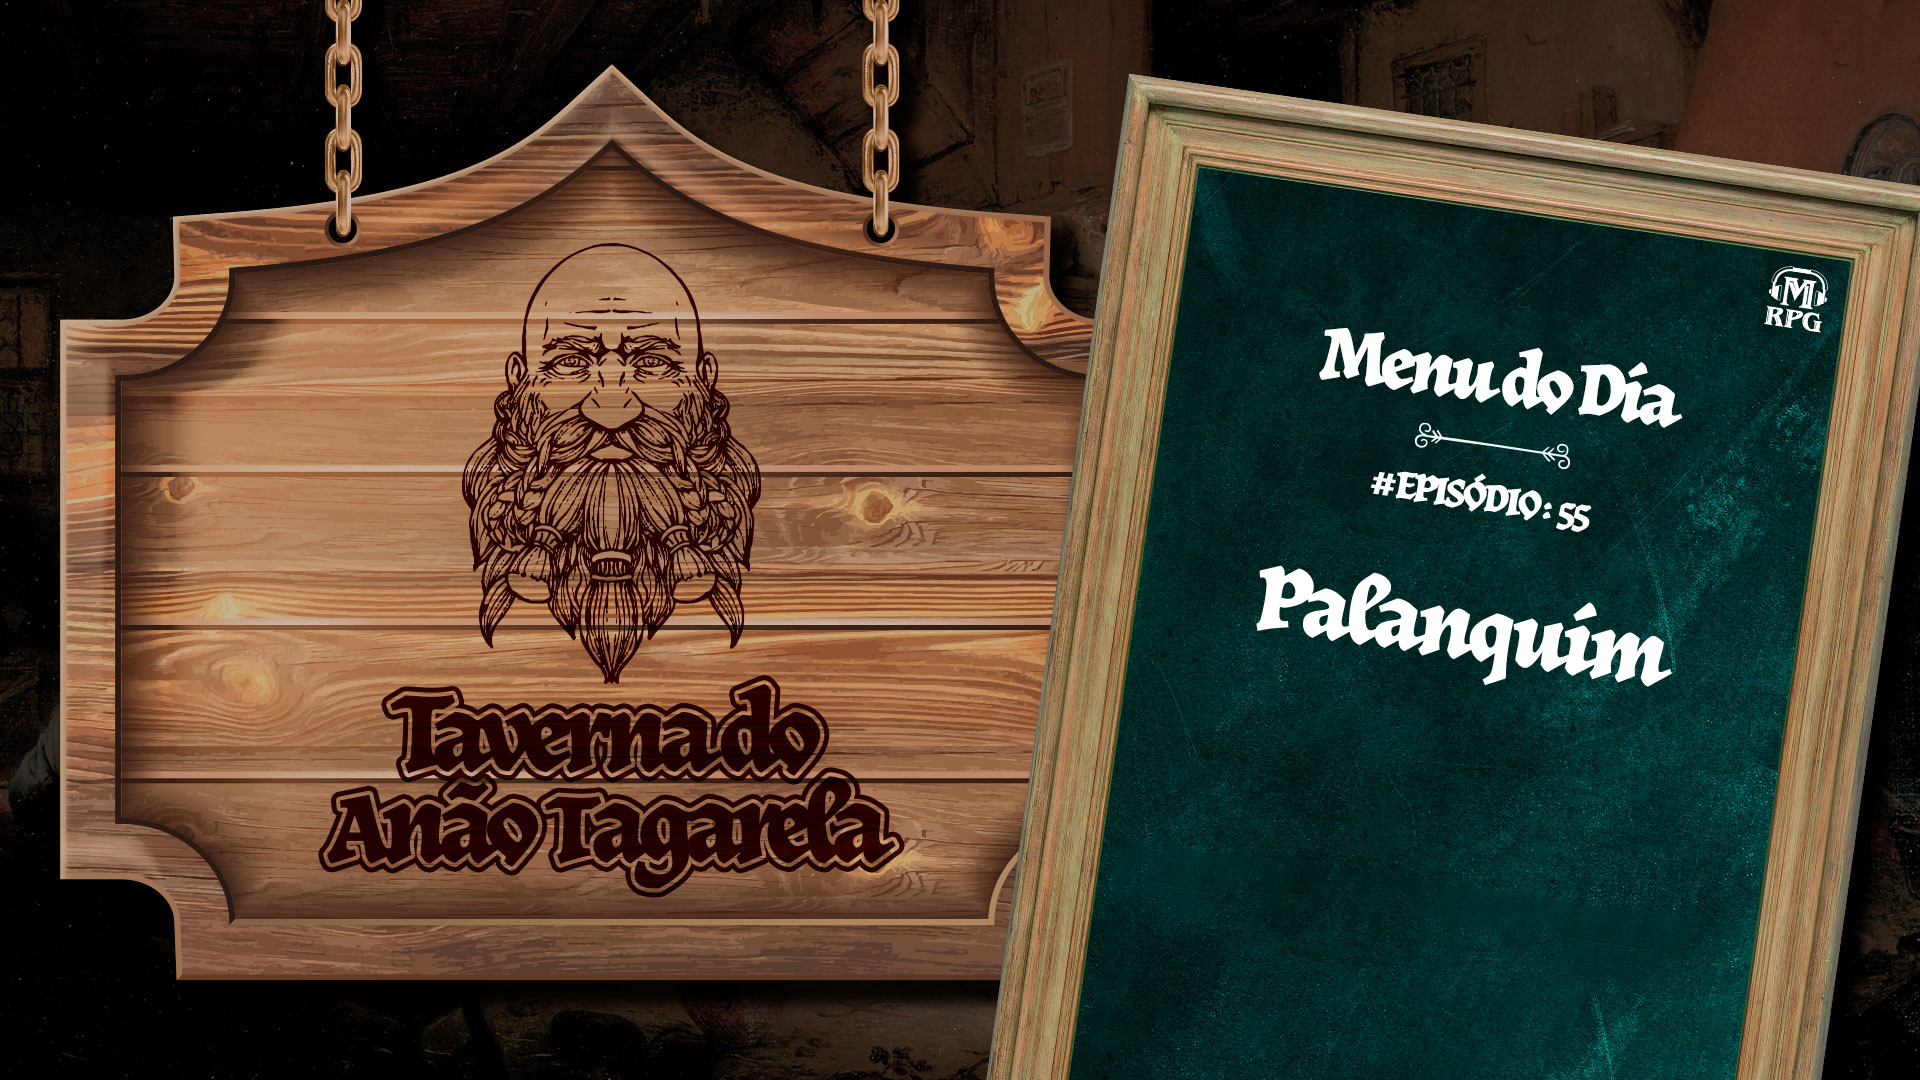 Palanquim – Taverna do Anão Tagarela #55